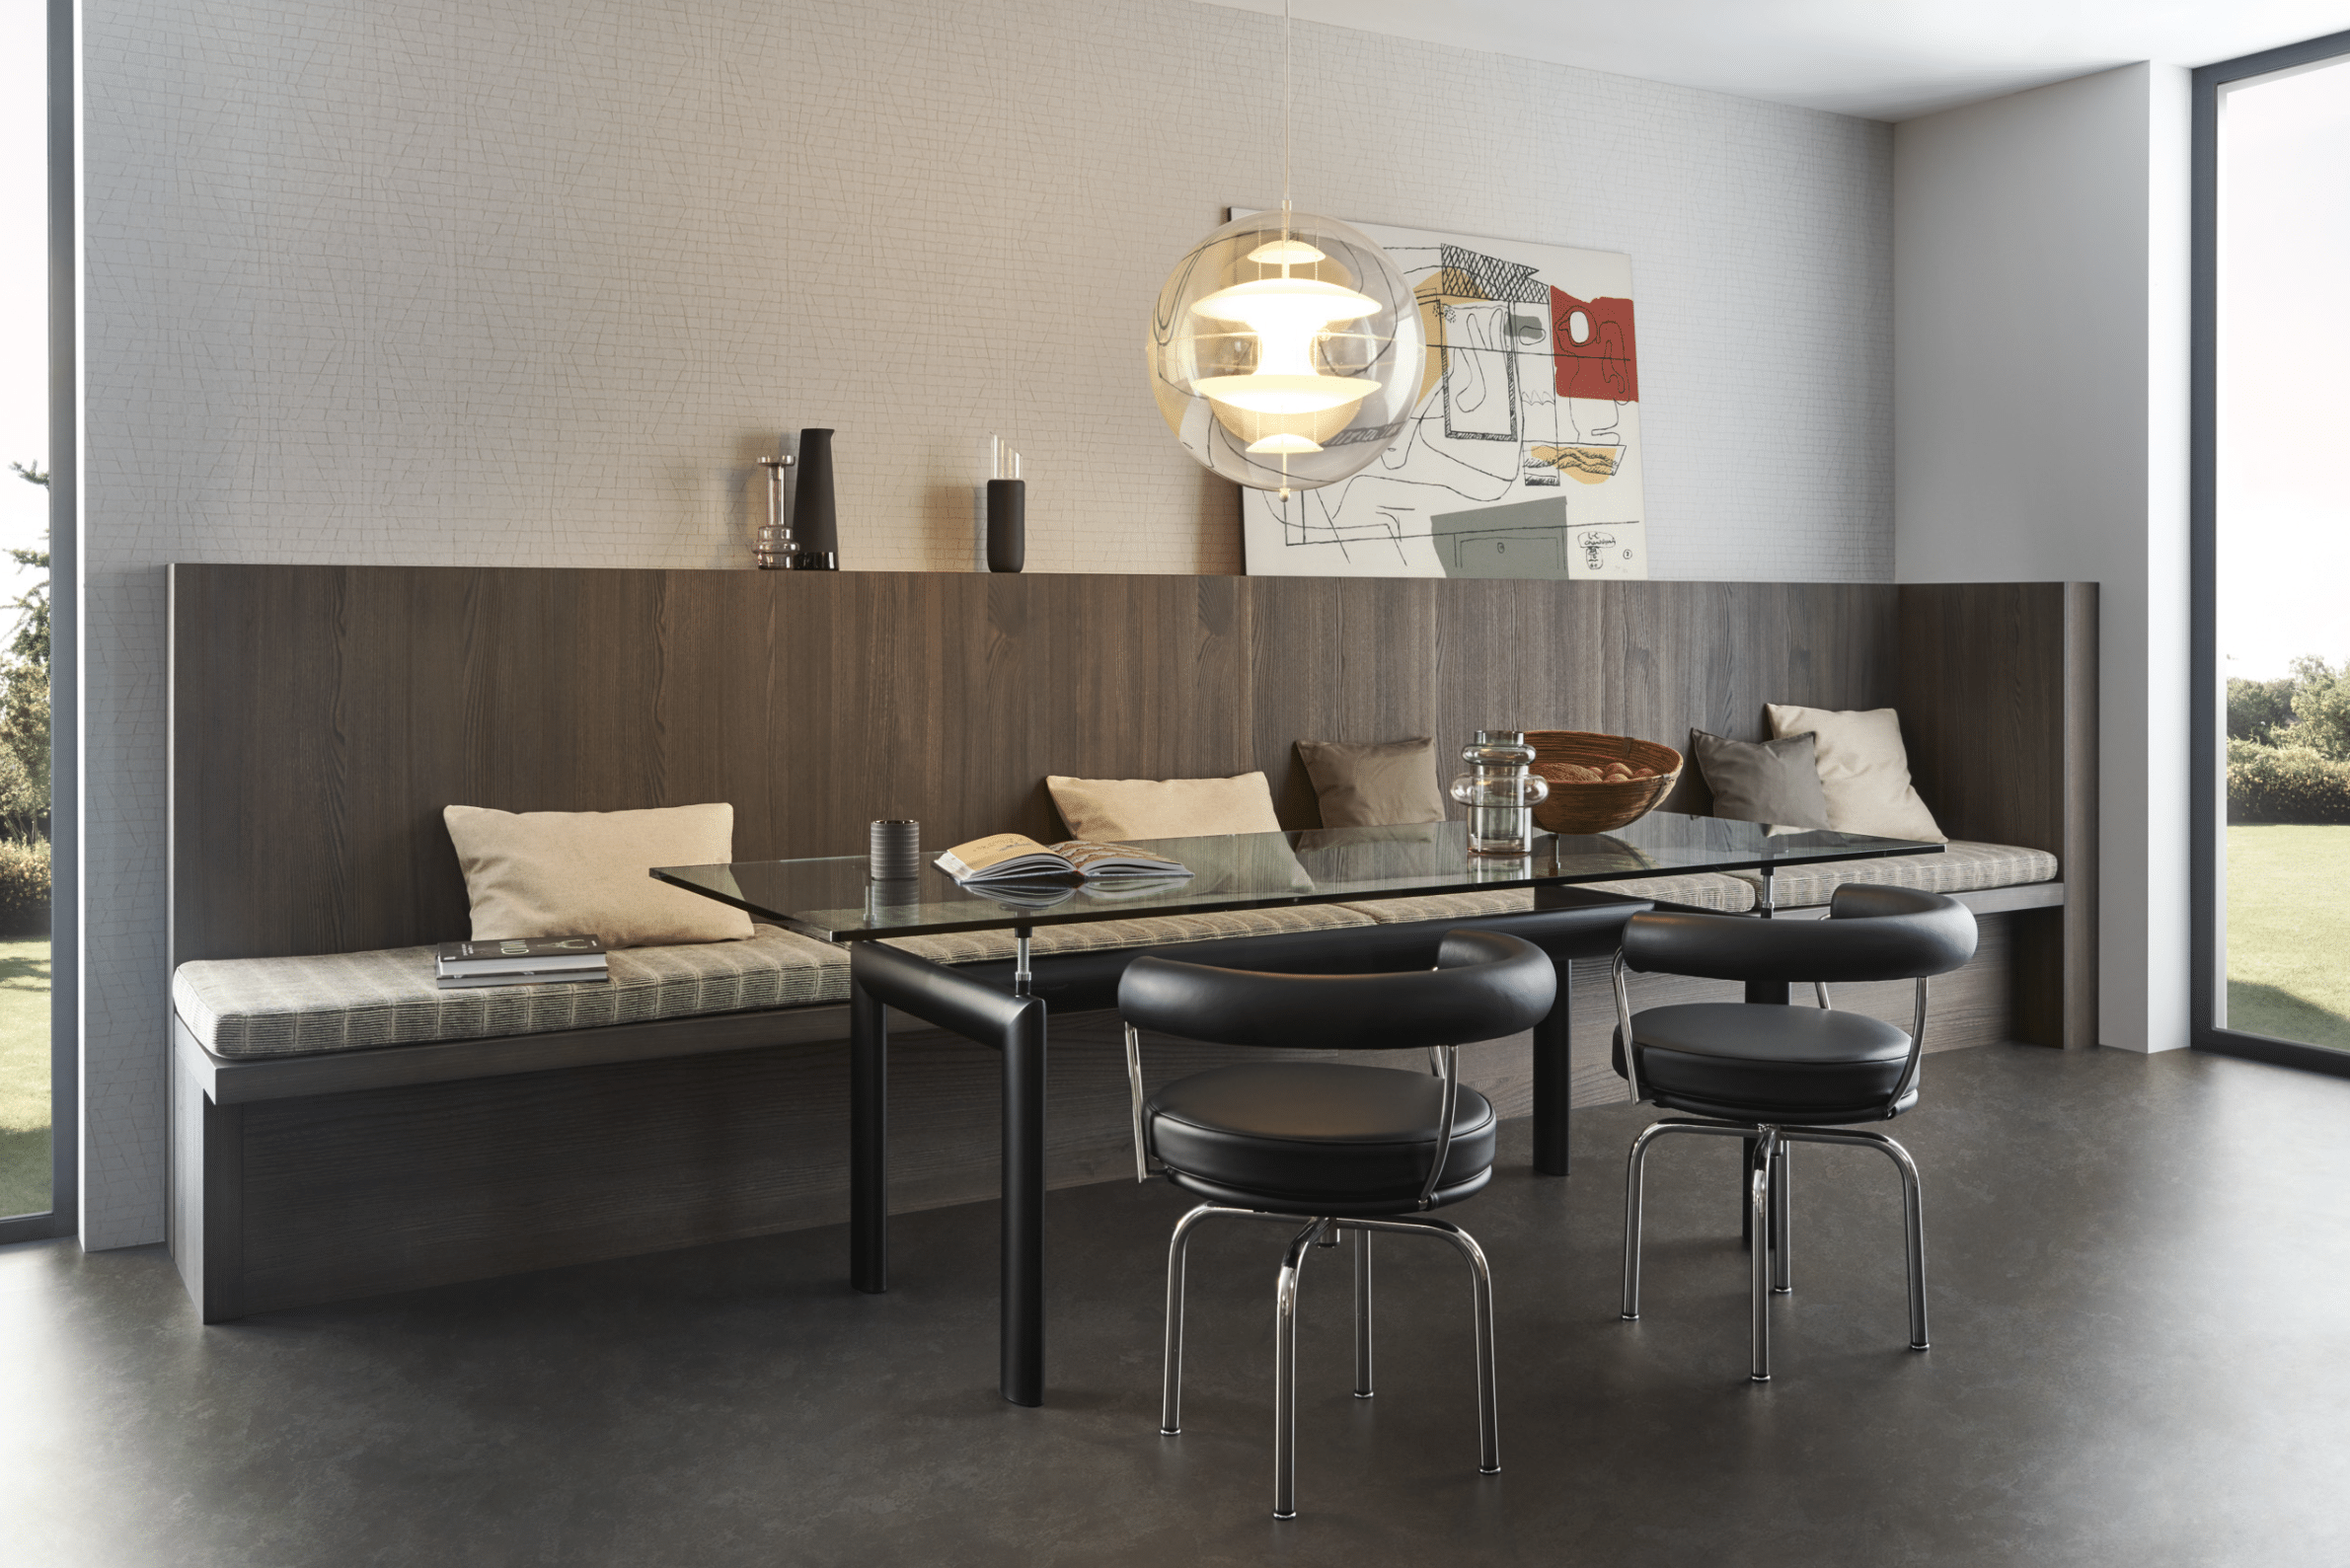 WOHNHAUS Grill & Ronacher zeigt einen Essbereich mit gemütlicher Sitzbank, Stühlen und einem Glastisch von LEICHT Küchen.